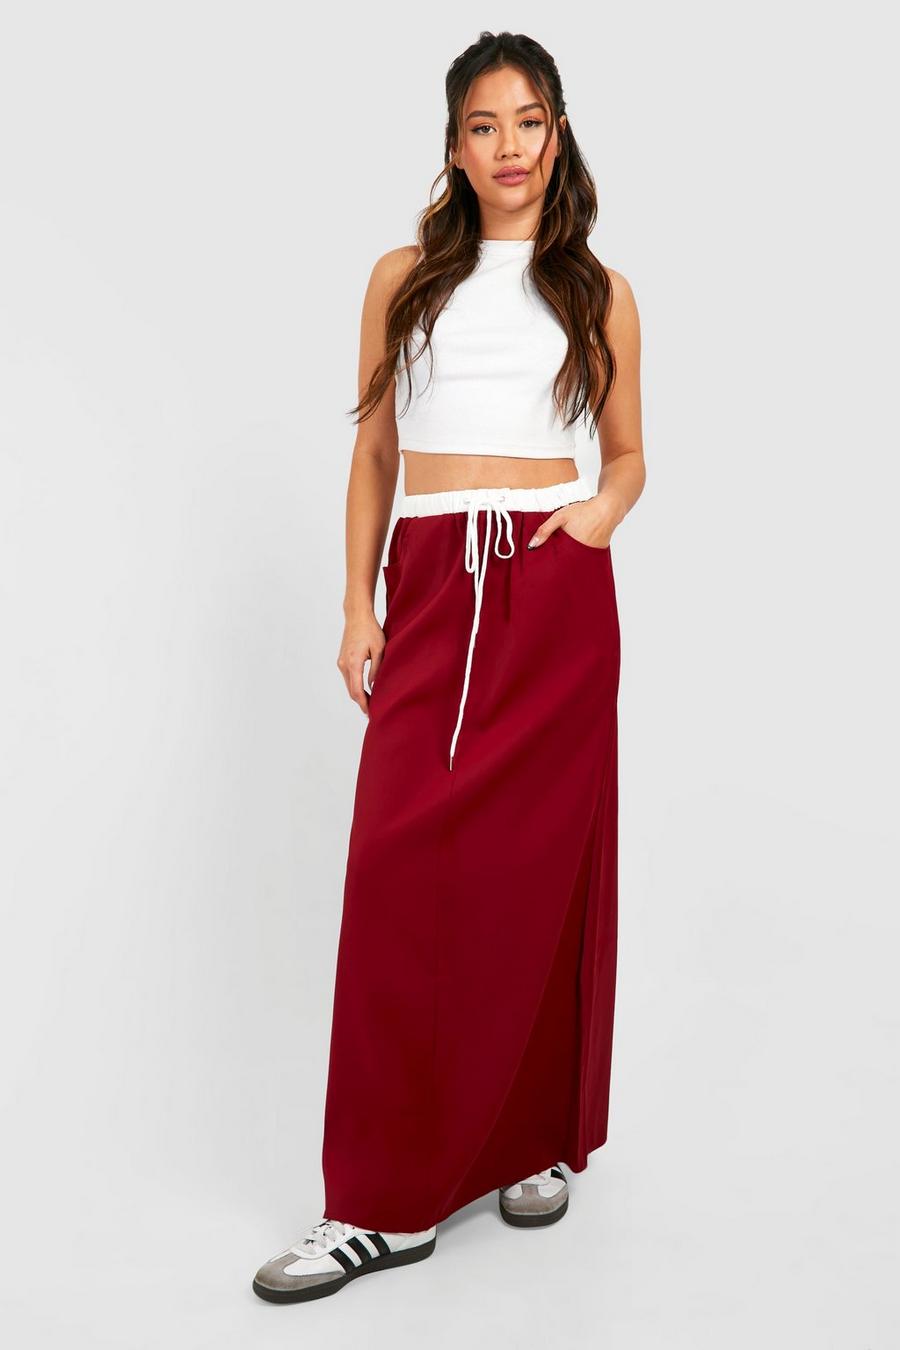 Cherry Waistband Detail Maxi Skirt 